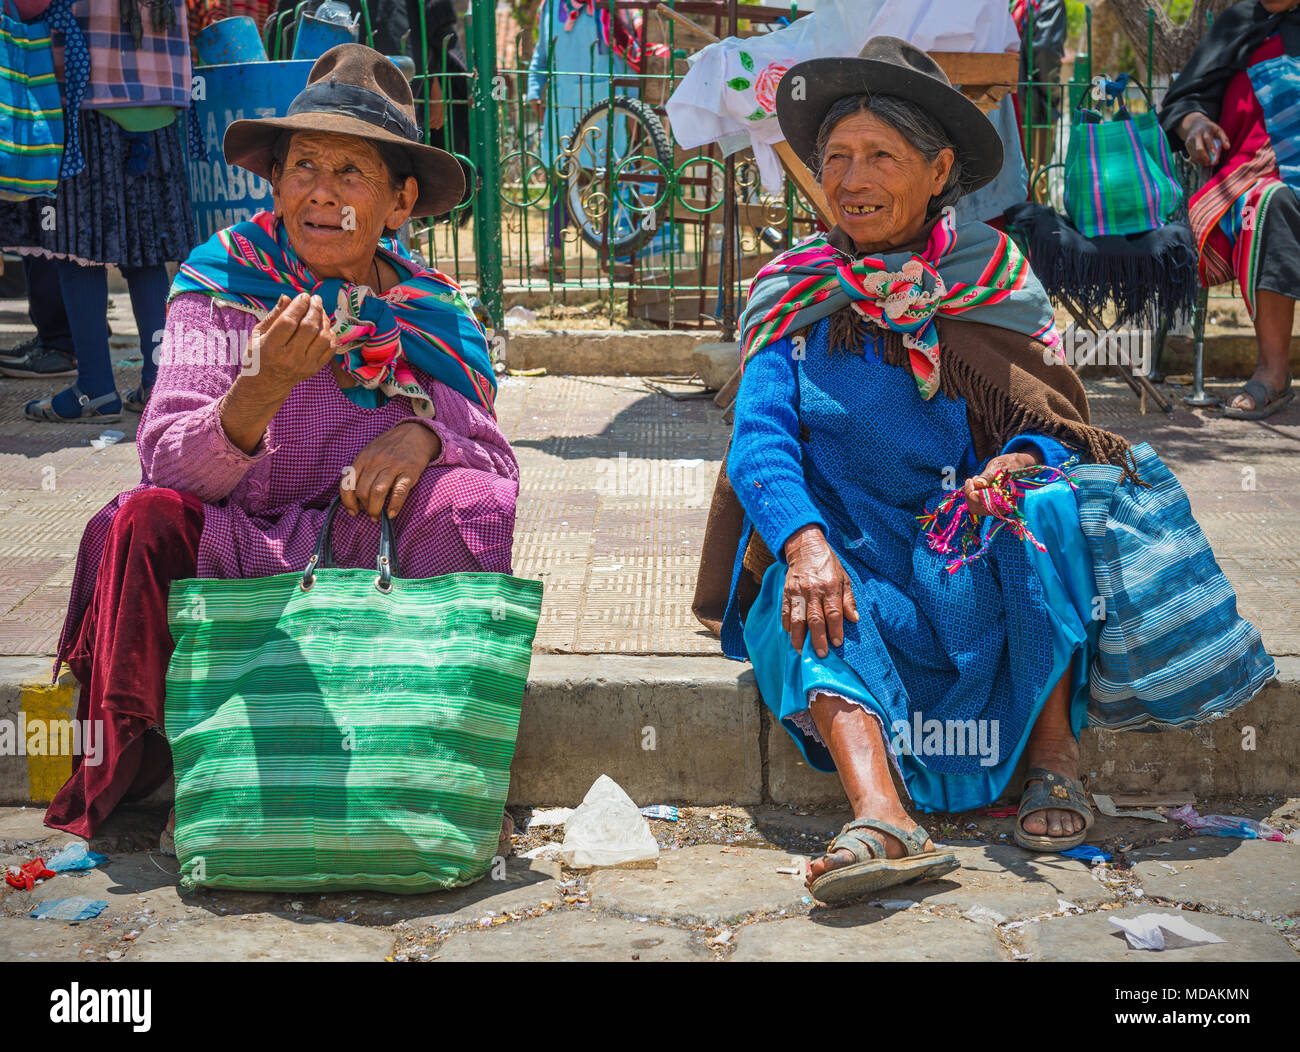 Dos mujeres indígenas de alta categoría de la minoría indígena de Tarabuco chateando y hablando, sentado en la acera, en el mercado de domingo, Tarabuco, Bolivia Foto de stock